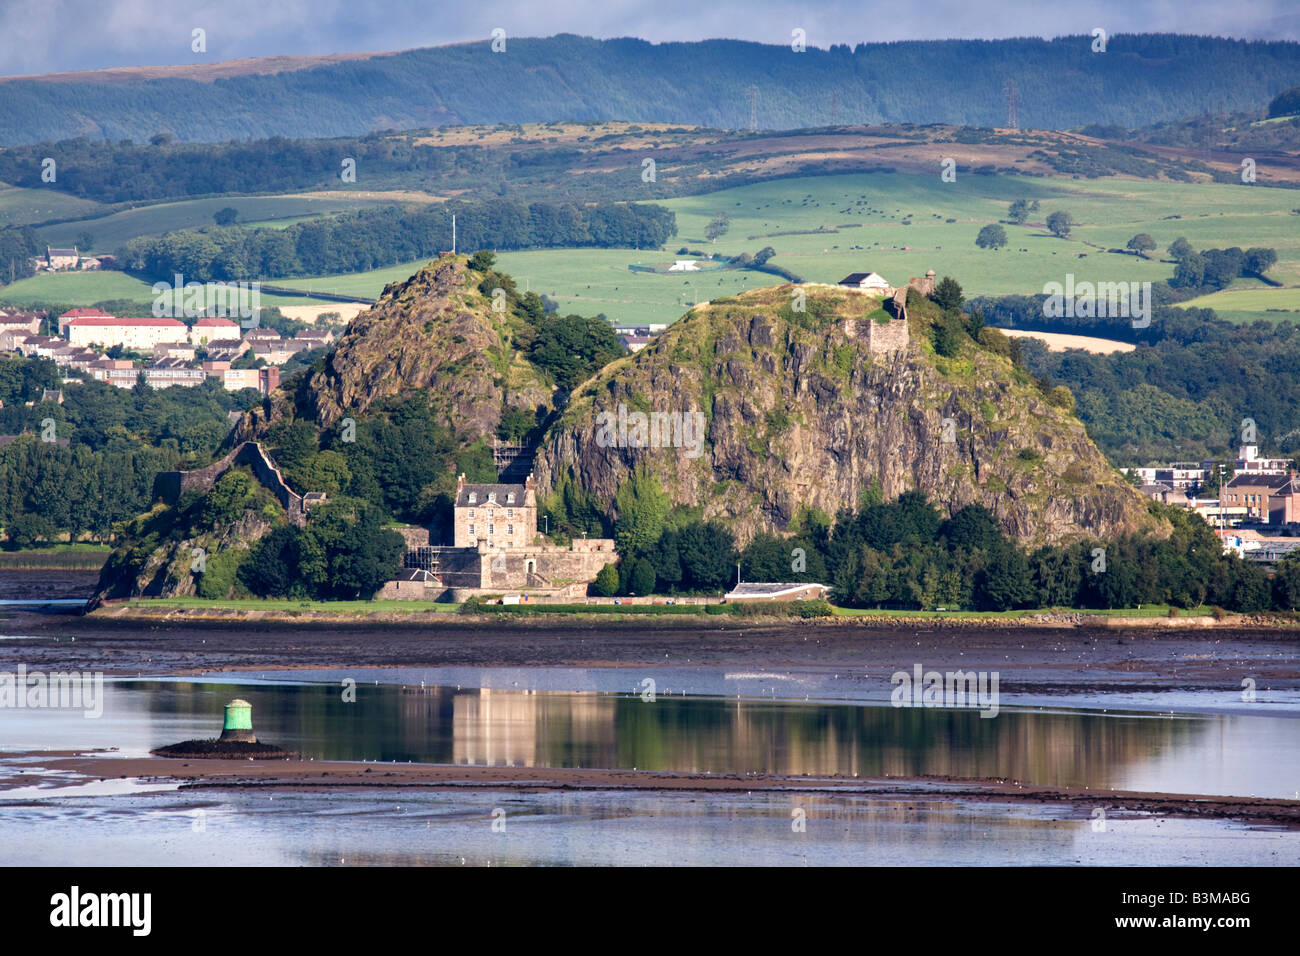 Dumbarton Castle et château de Dumbarton sur la rivière Clyde, en Écosse. Banque D'Images